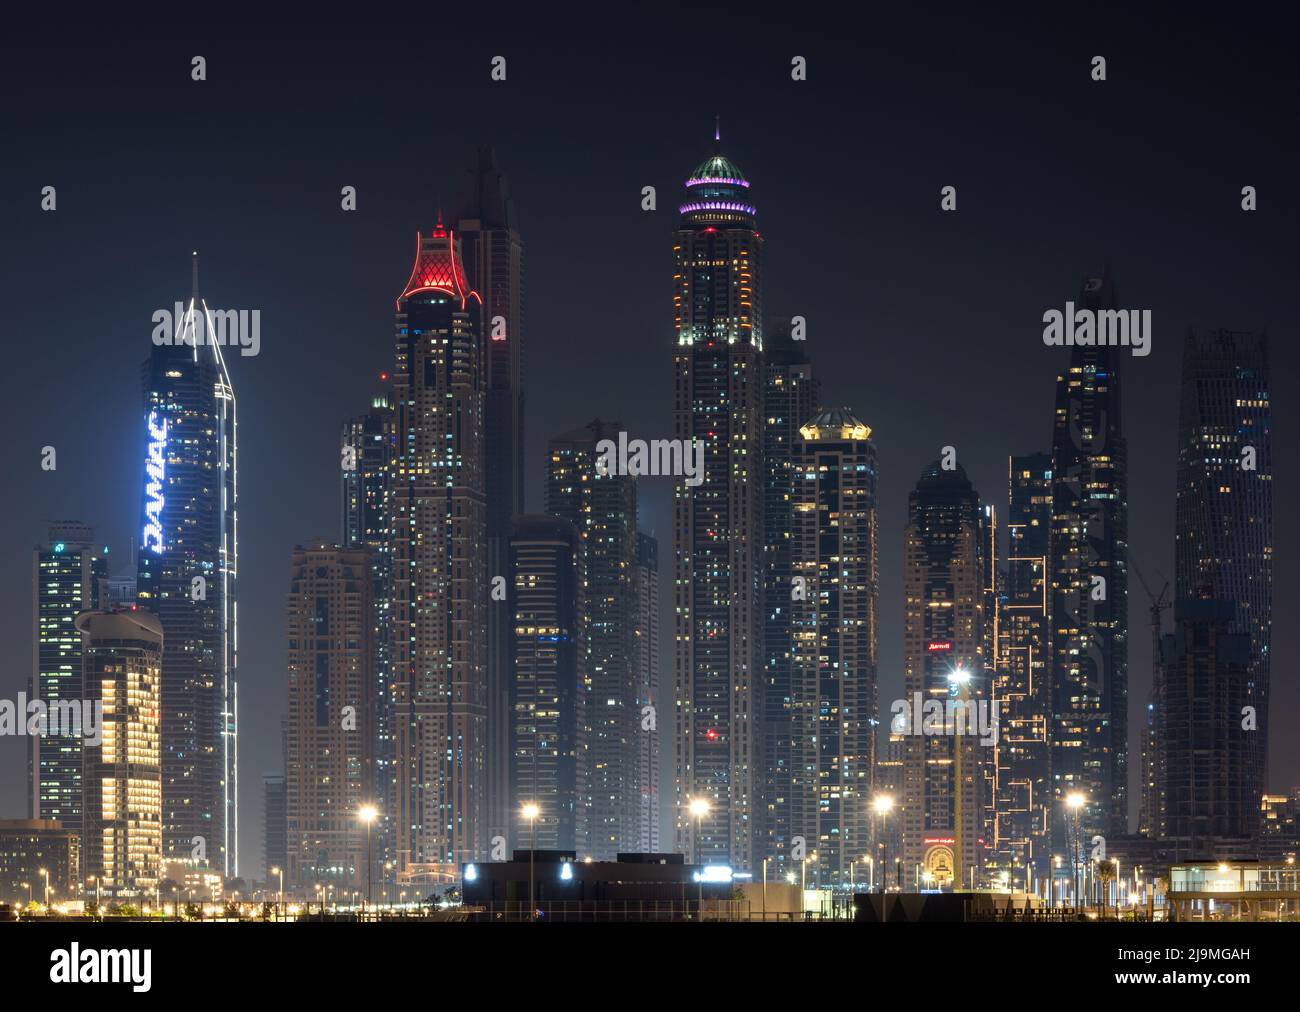 Escena nocturna de Dubai Marina con luces de la ciudad, nueva ciudad de alta tecnología de lujo en Oriente Medio, arquitectura de Emiratos Árabes Unidos. Dubai Marina paisaje urbano, Emiratos Árabes Unidos Foto de stock